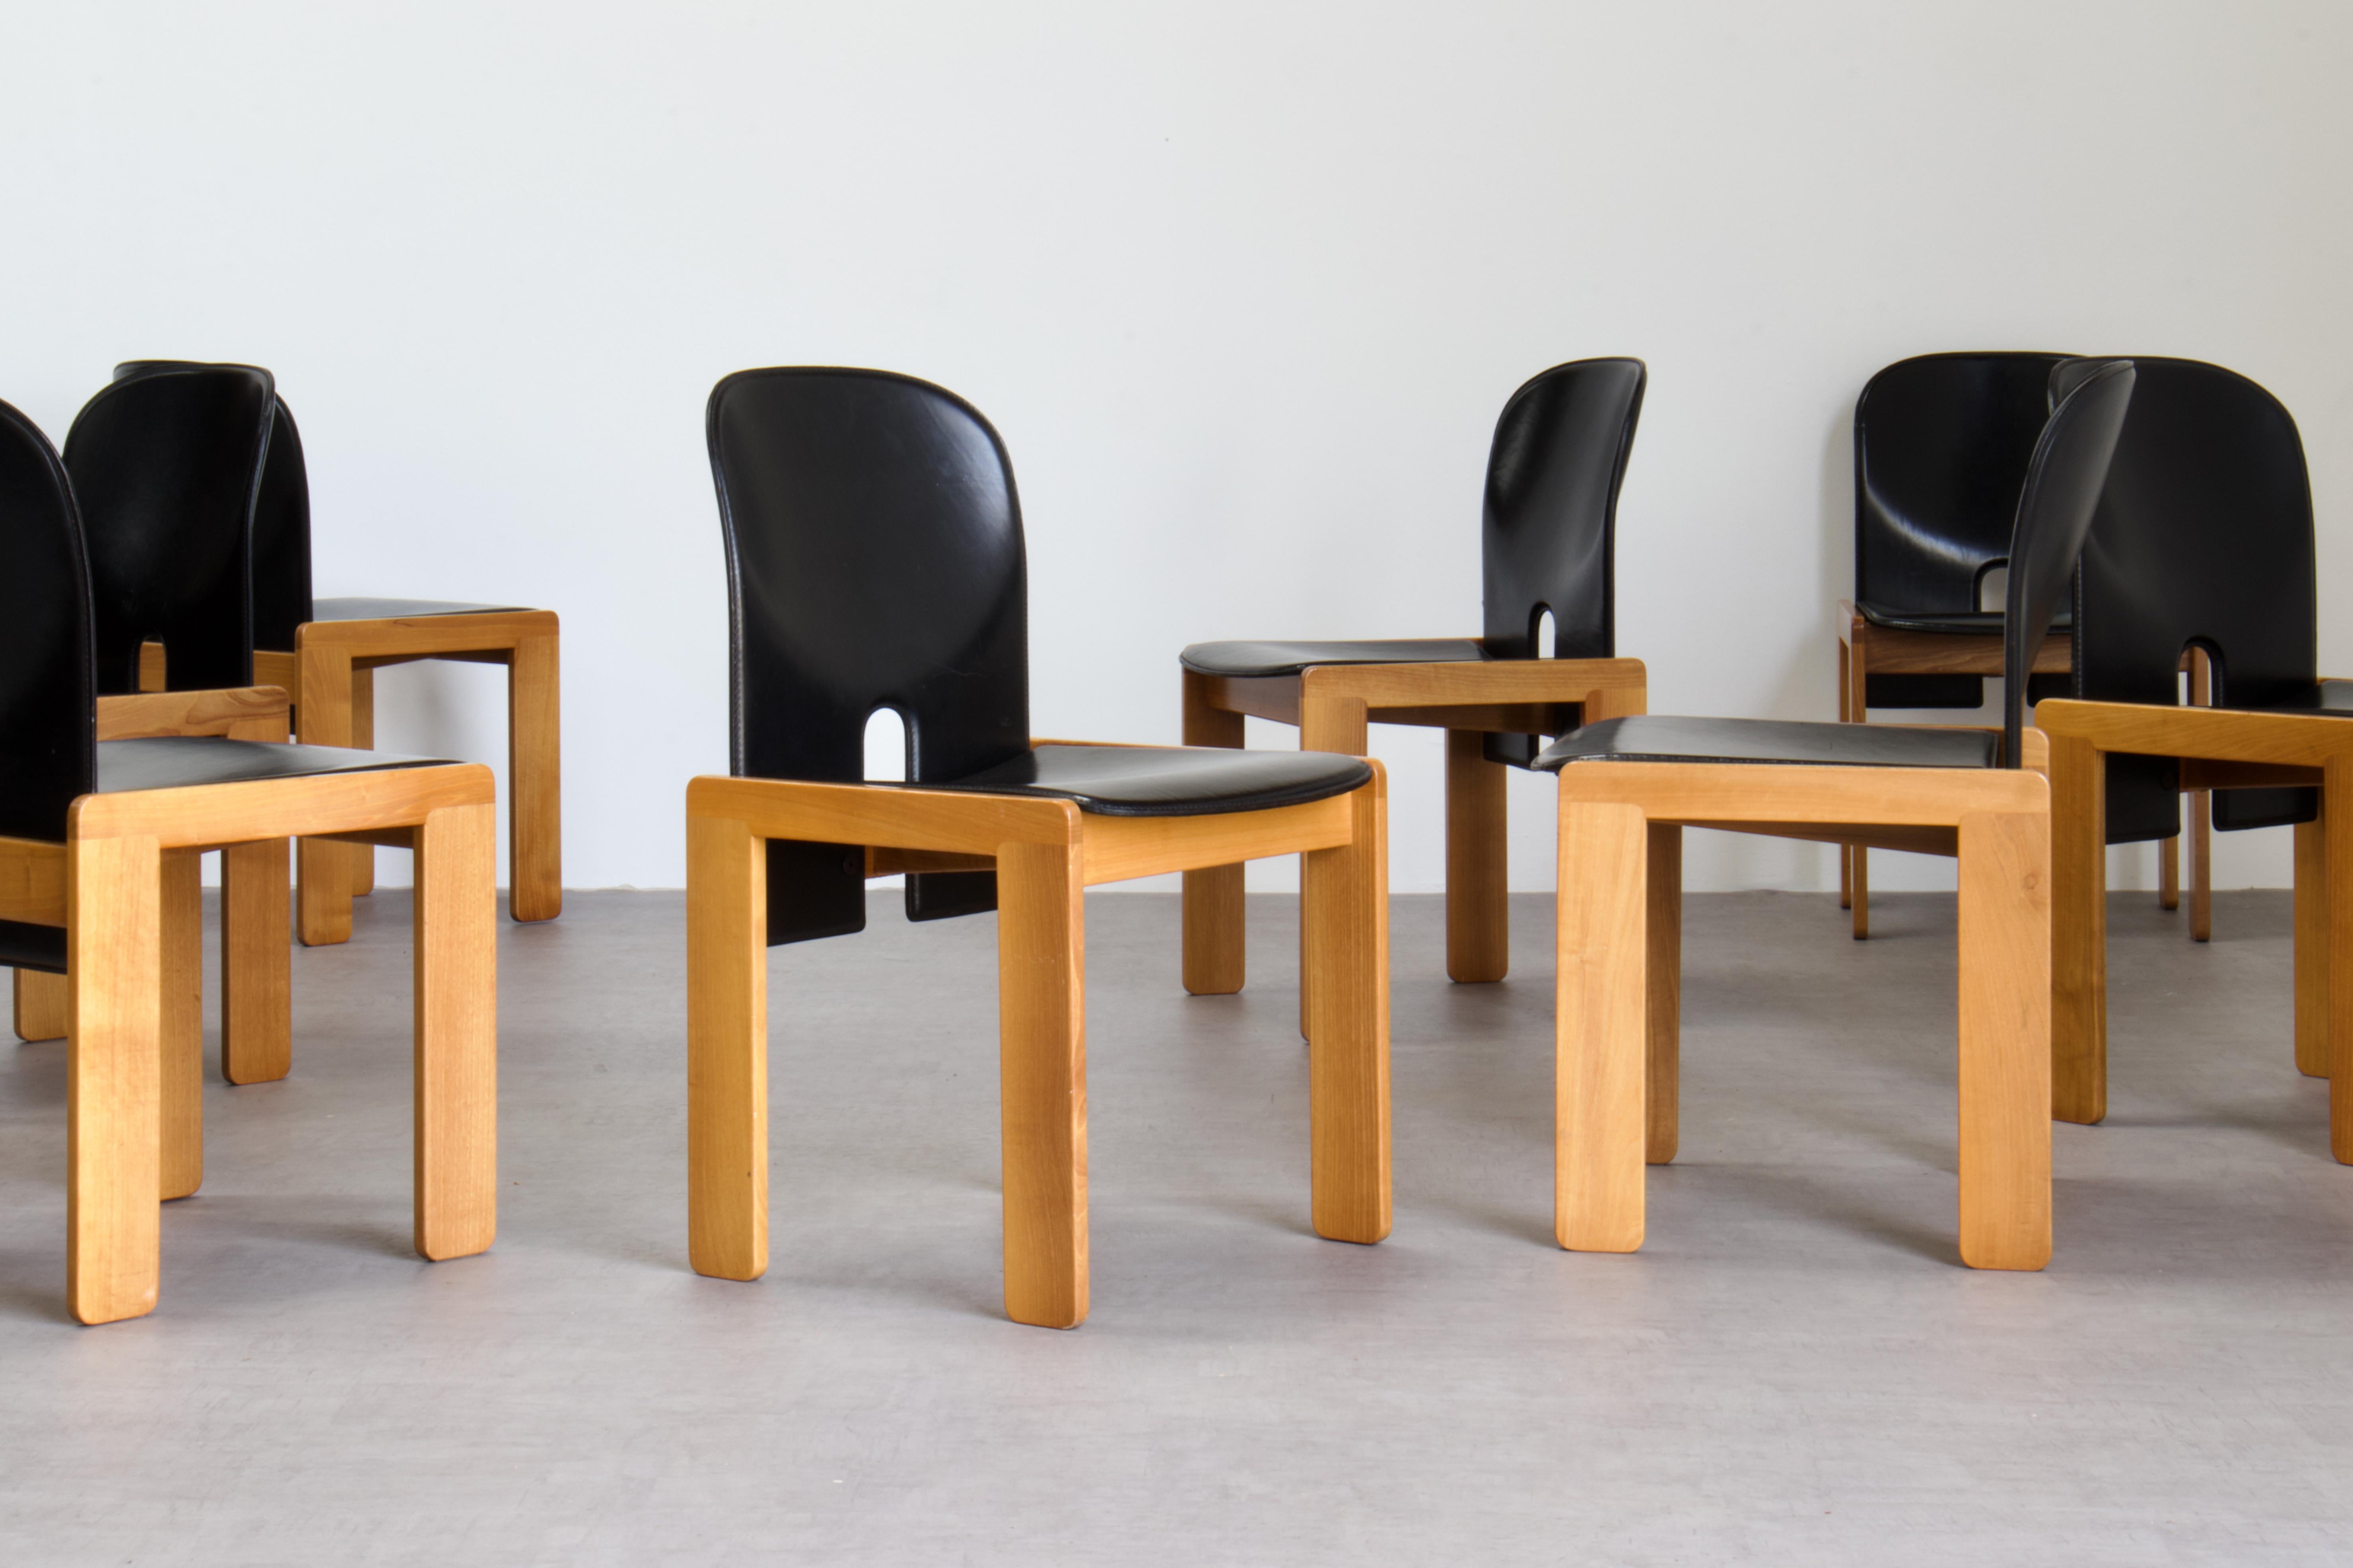 Ensemble de huit chaises de salle à manger modèle 121, conçues par Afra et Tobia Scarpa et produites par le fabricant italien Cassina en 1967. Ils sont recouverts de cuir noir et leur structure est en bois clair laqué (frêne). 

Remarquable état